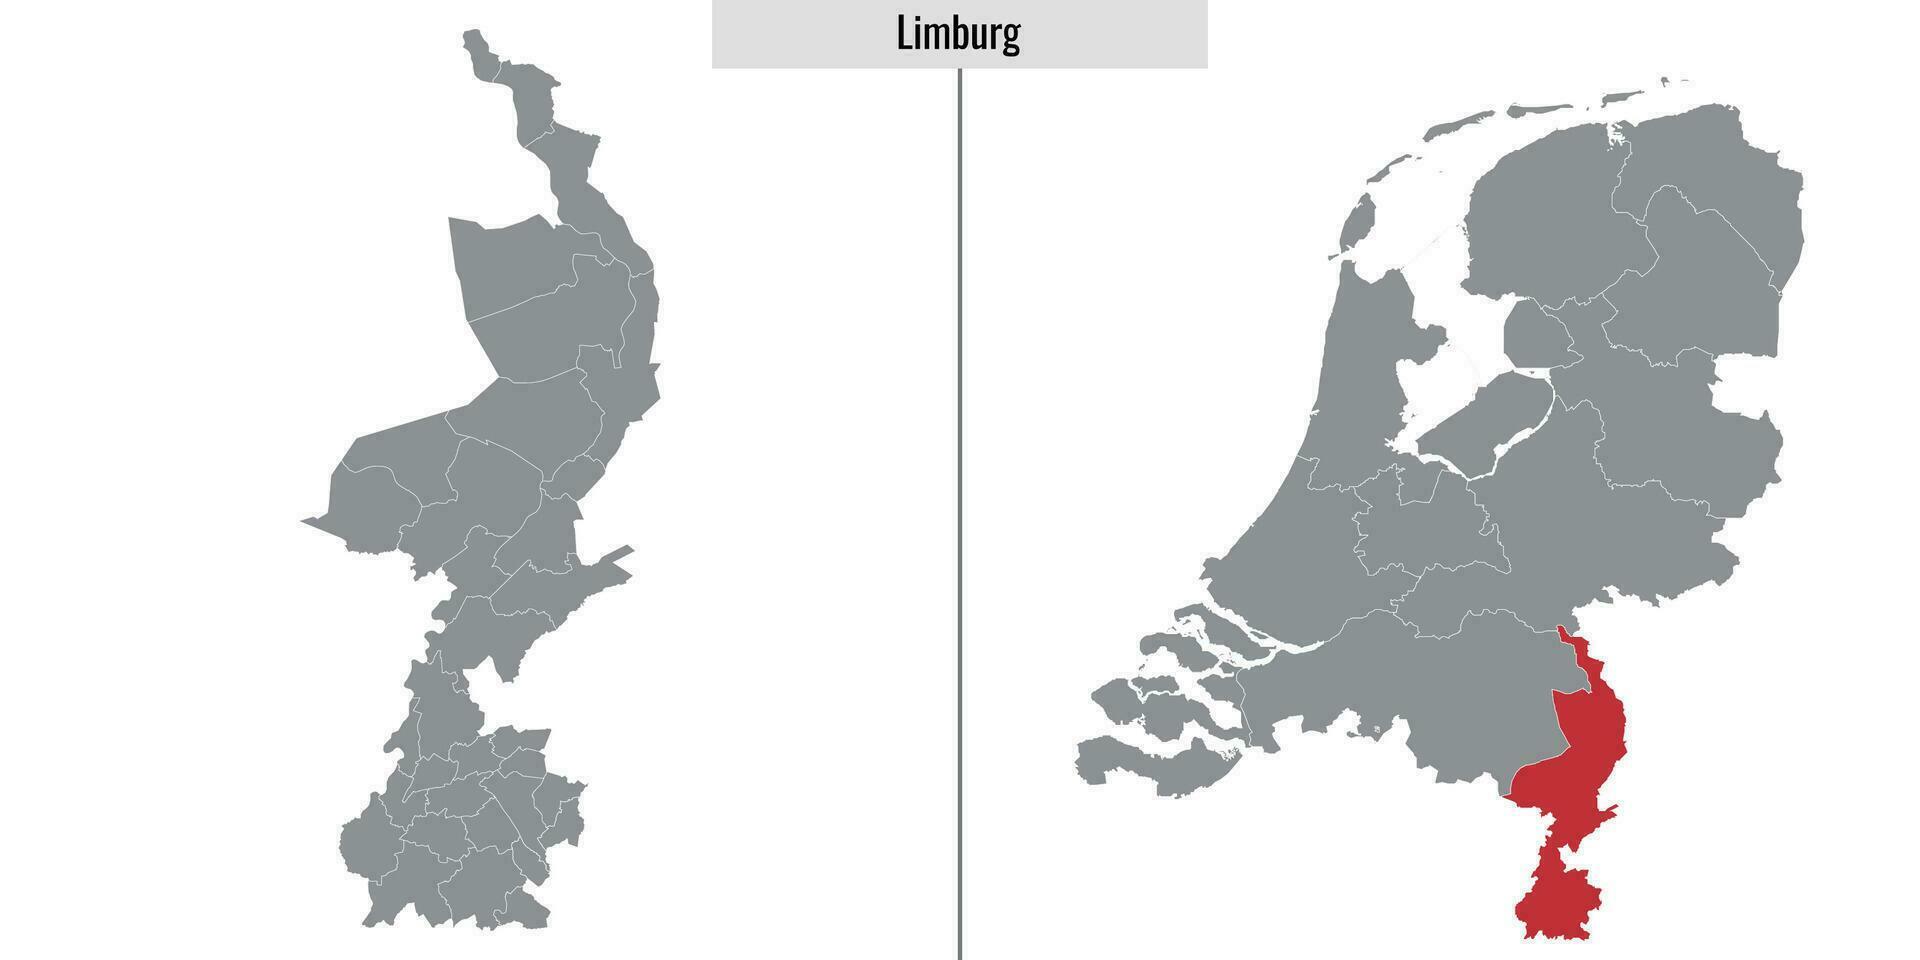 Karte Region von Niederlande vektor